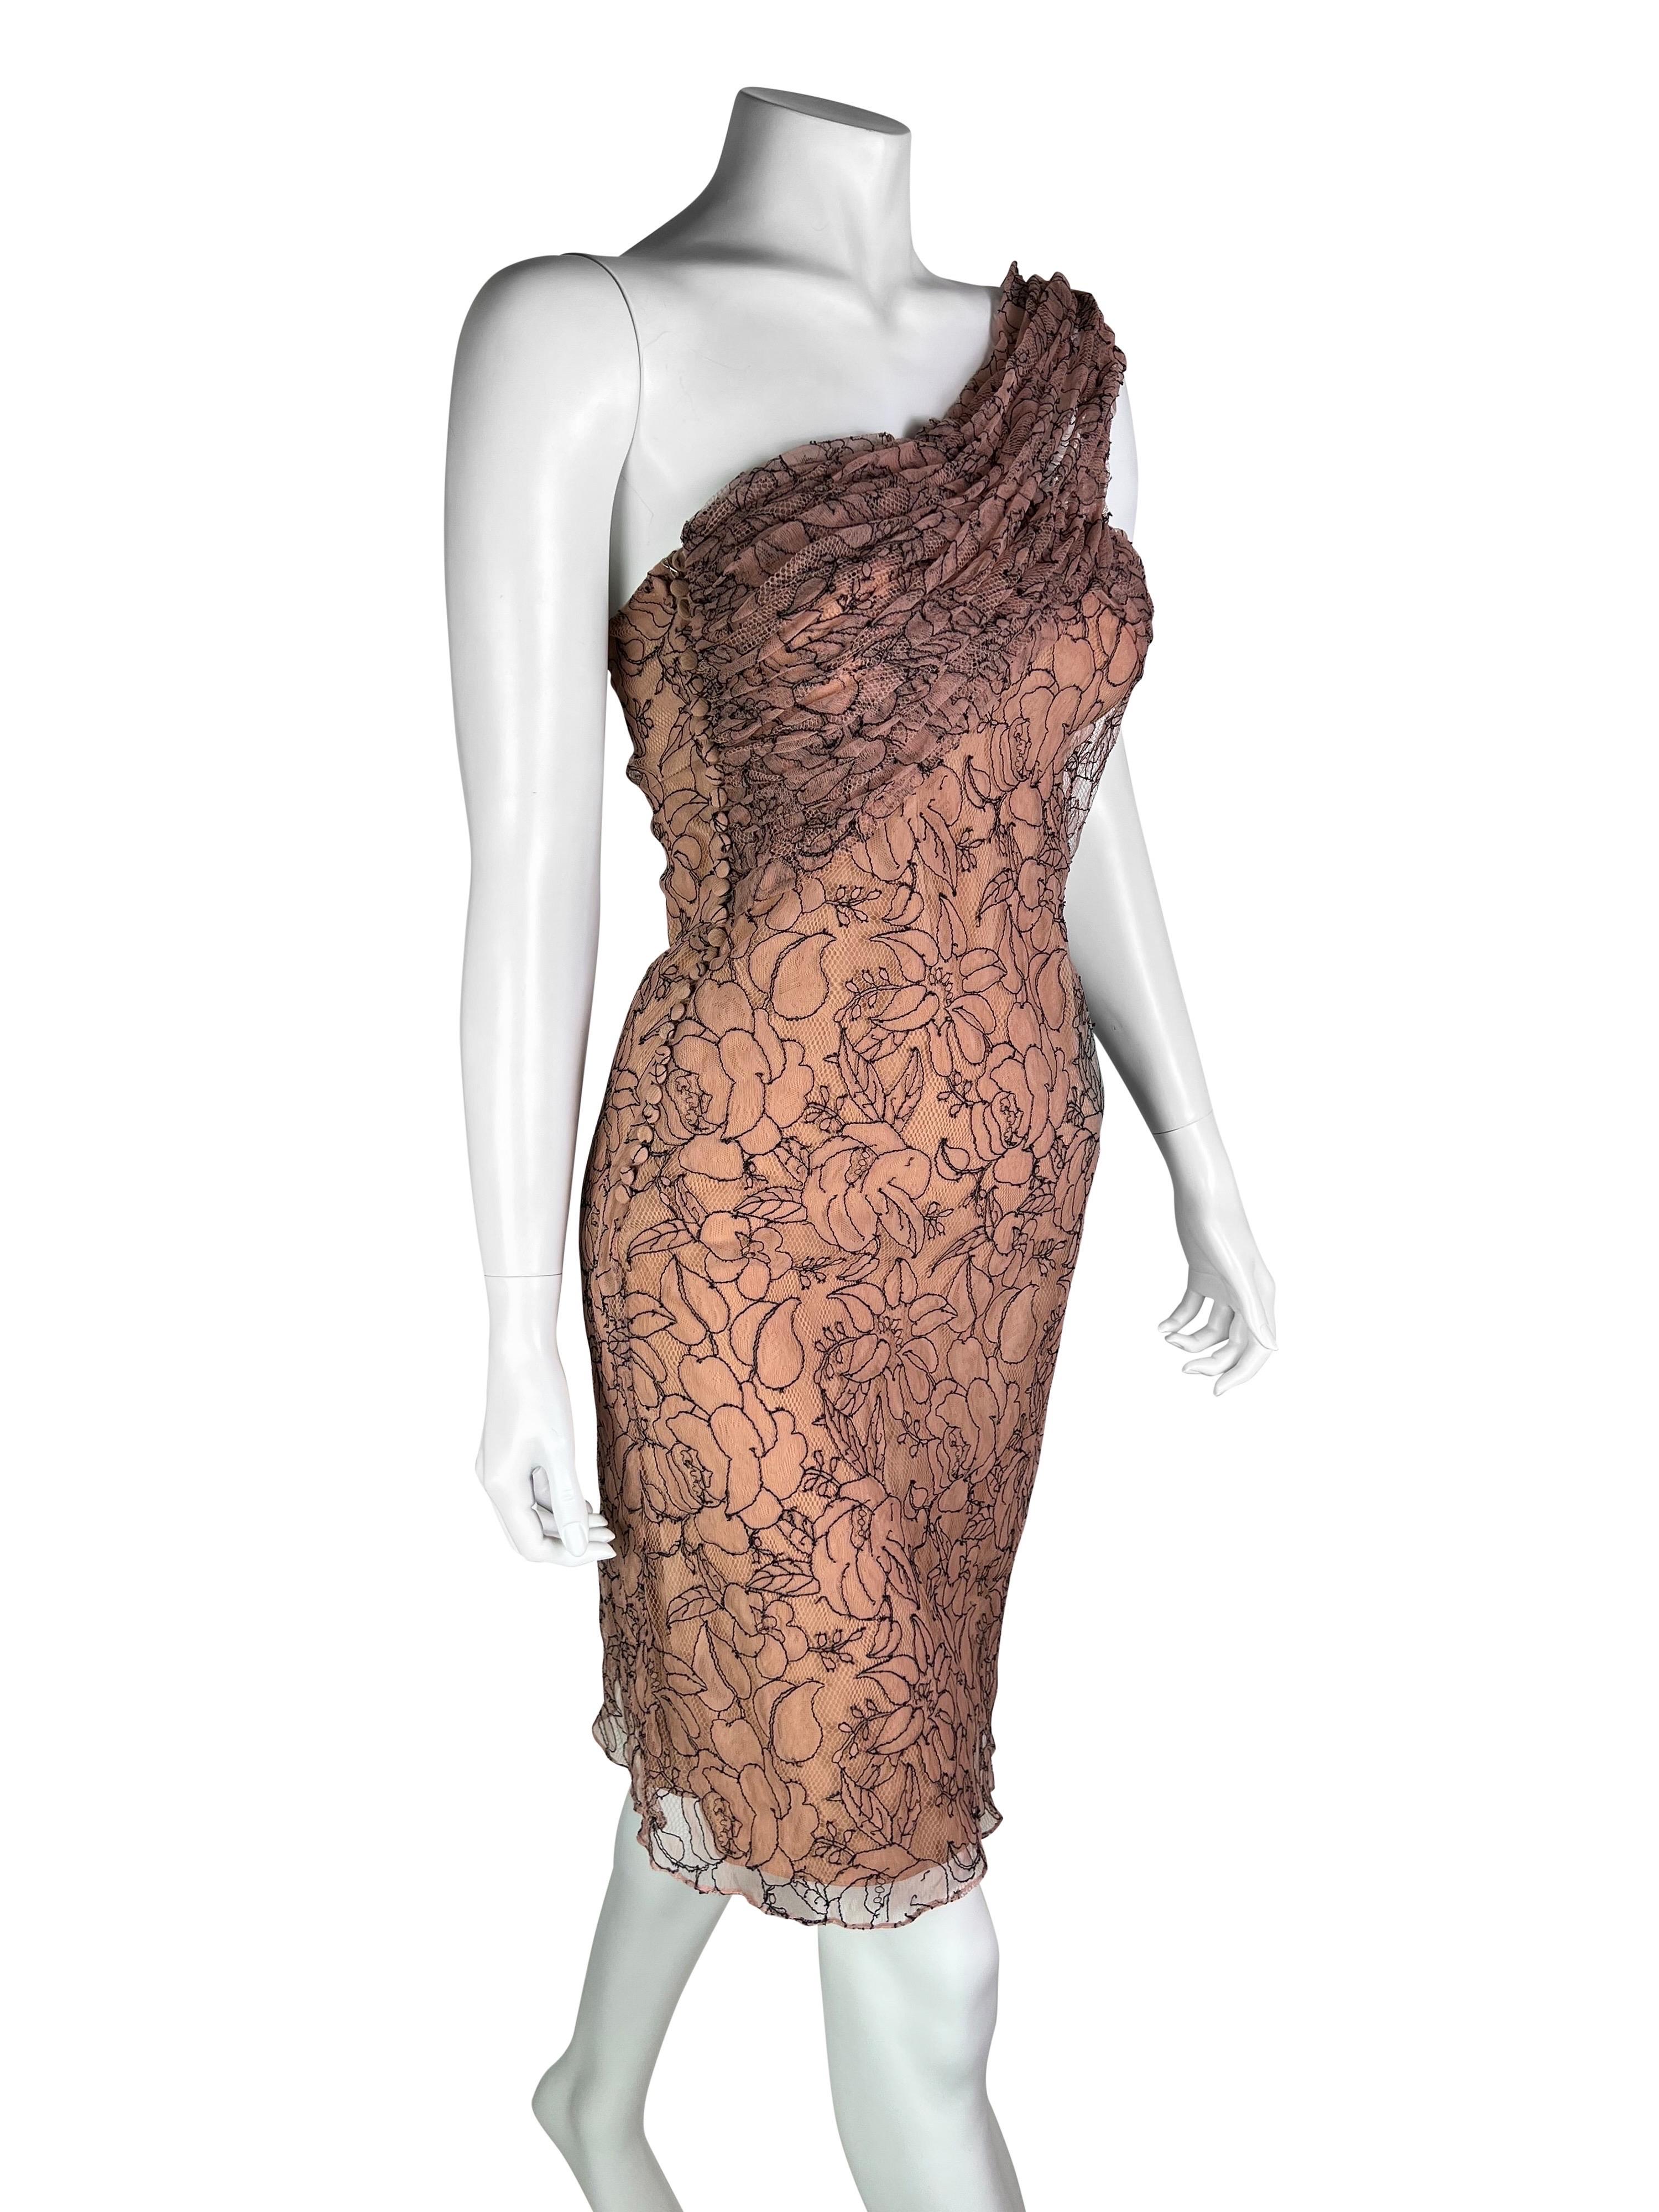 Une superbe robe en soie avec une magnifique couche de dentelle complexe, signature de la collection couleur neutre, flatteuse sur tous les teints. 

Taille FR 38.

Mesures (à plat sur un côté) :

D'une aisselle à l'autre - 41 cm (16 in)
Taille - 37